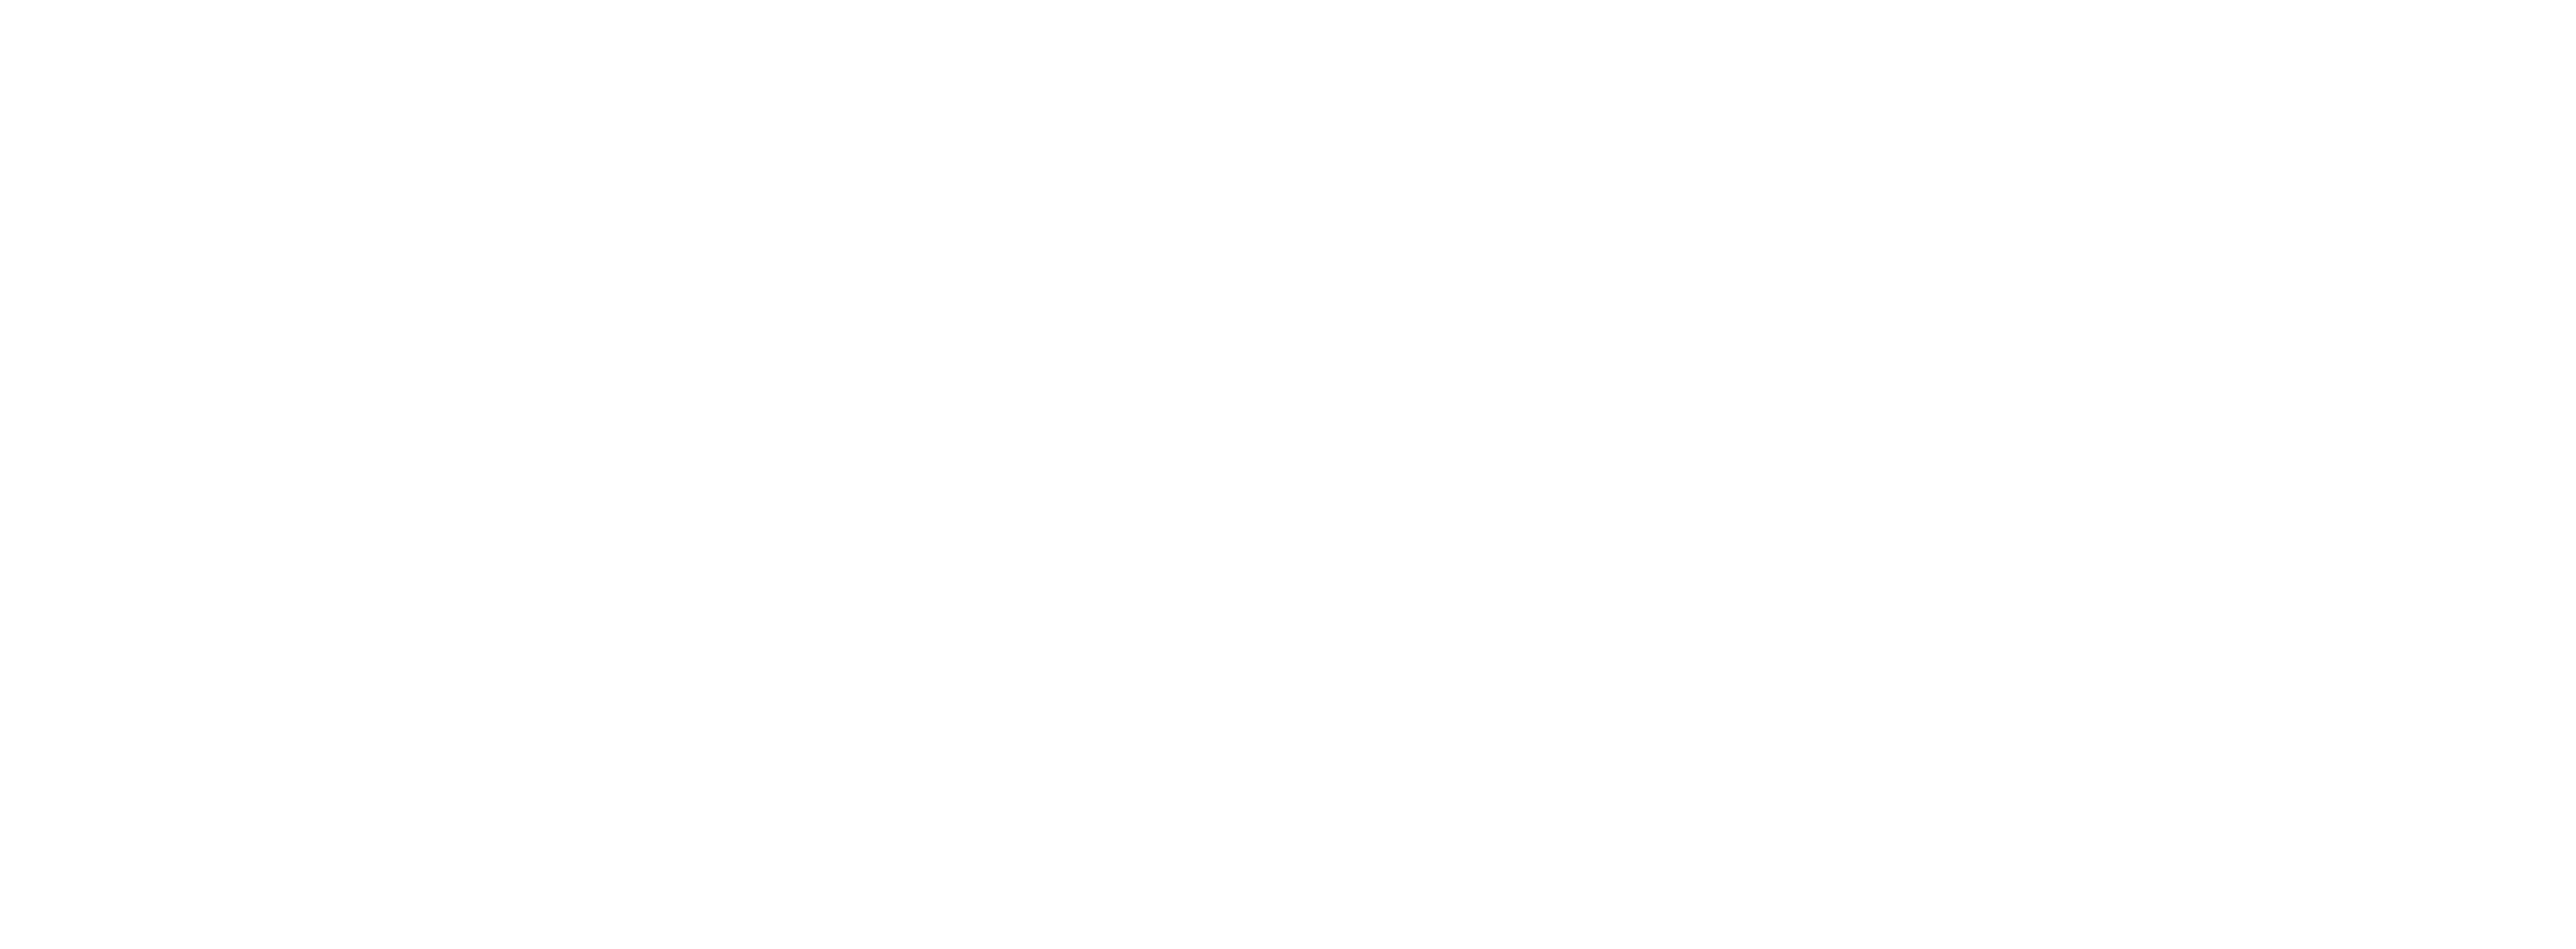 Felicity logo